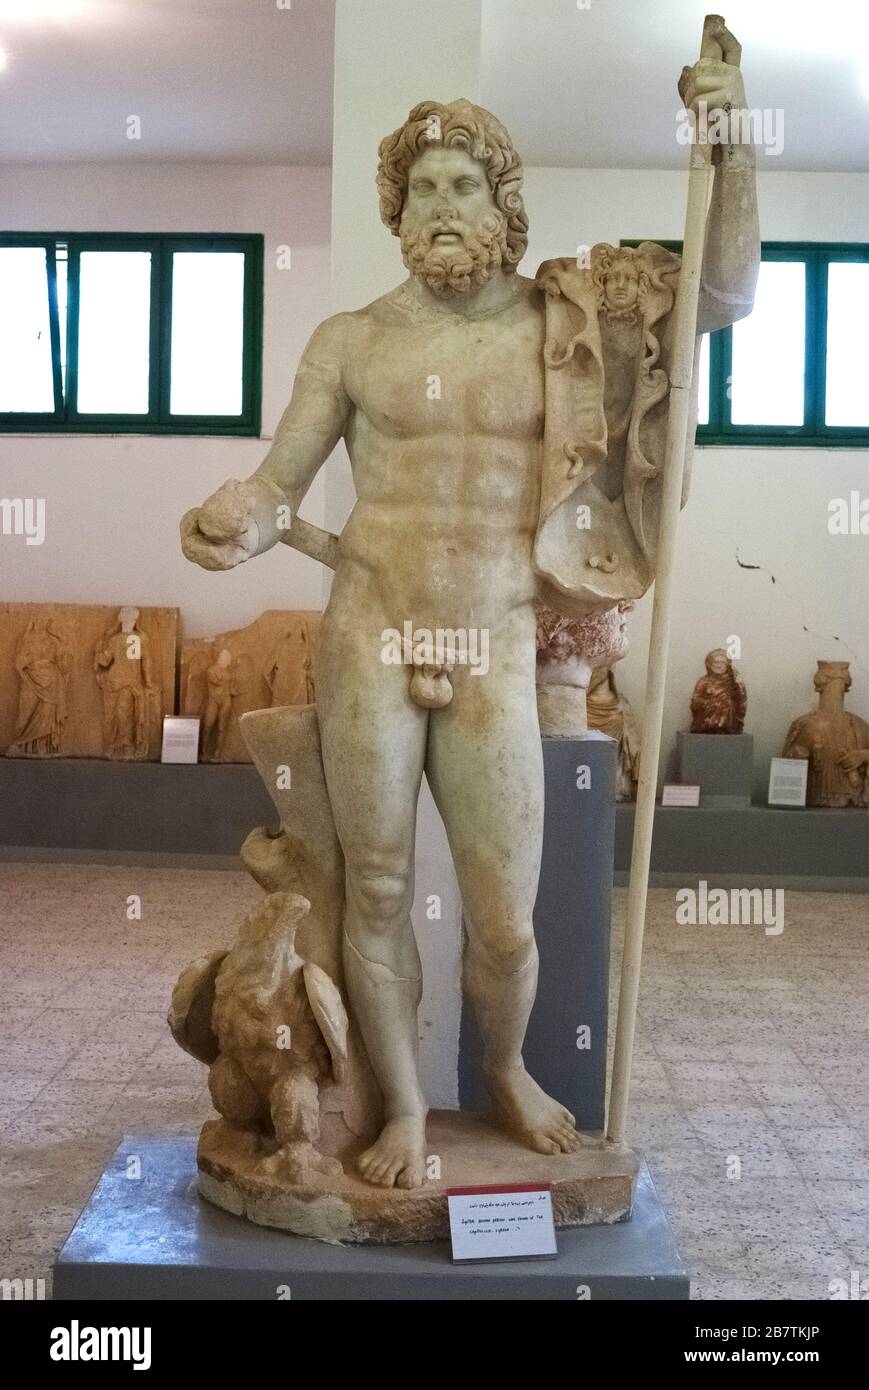 Römischer gott Jupiter, alte römische Skulptur, derzeit im archäologischen Museum des UNESCO-Weltkulturerbes Kyrene, Libyen, Oktober 2007. Stockfoto